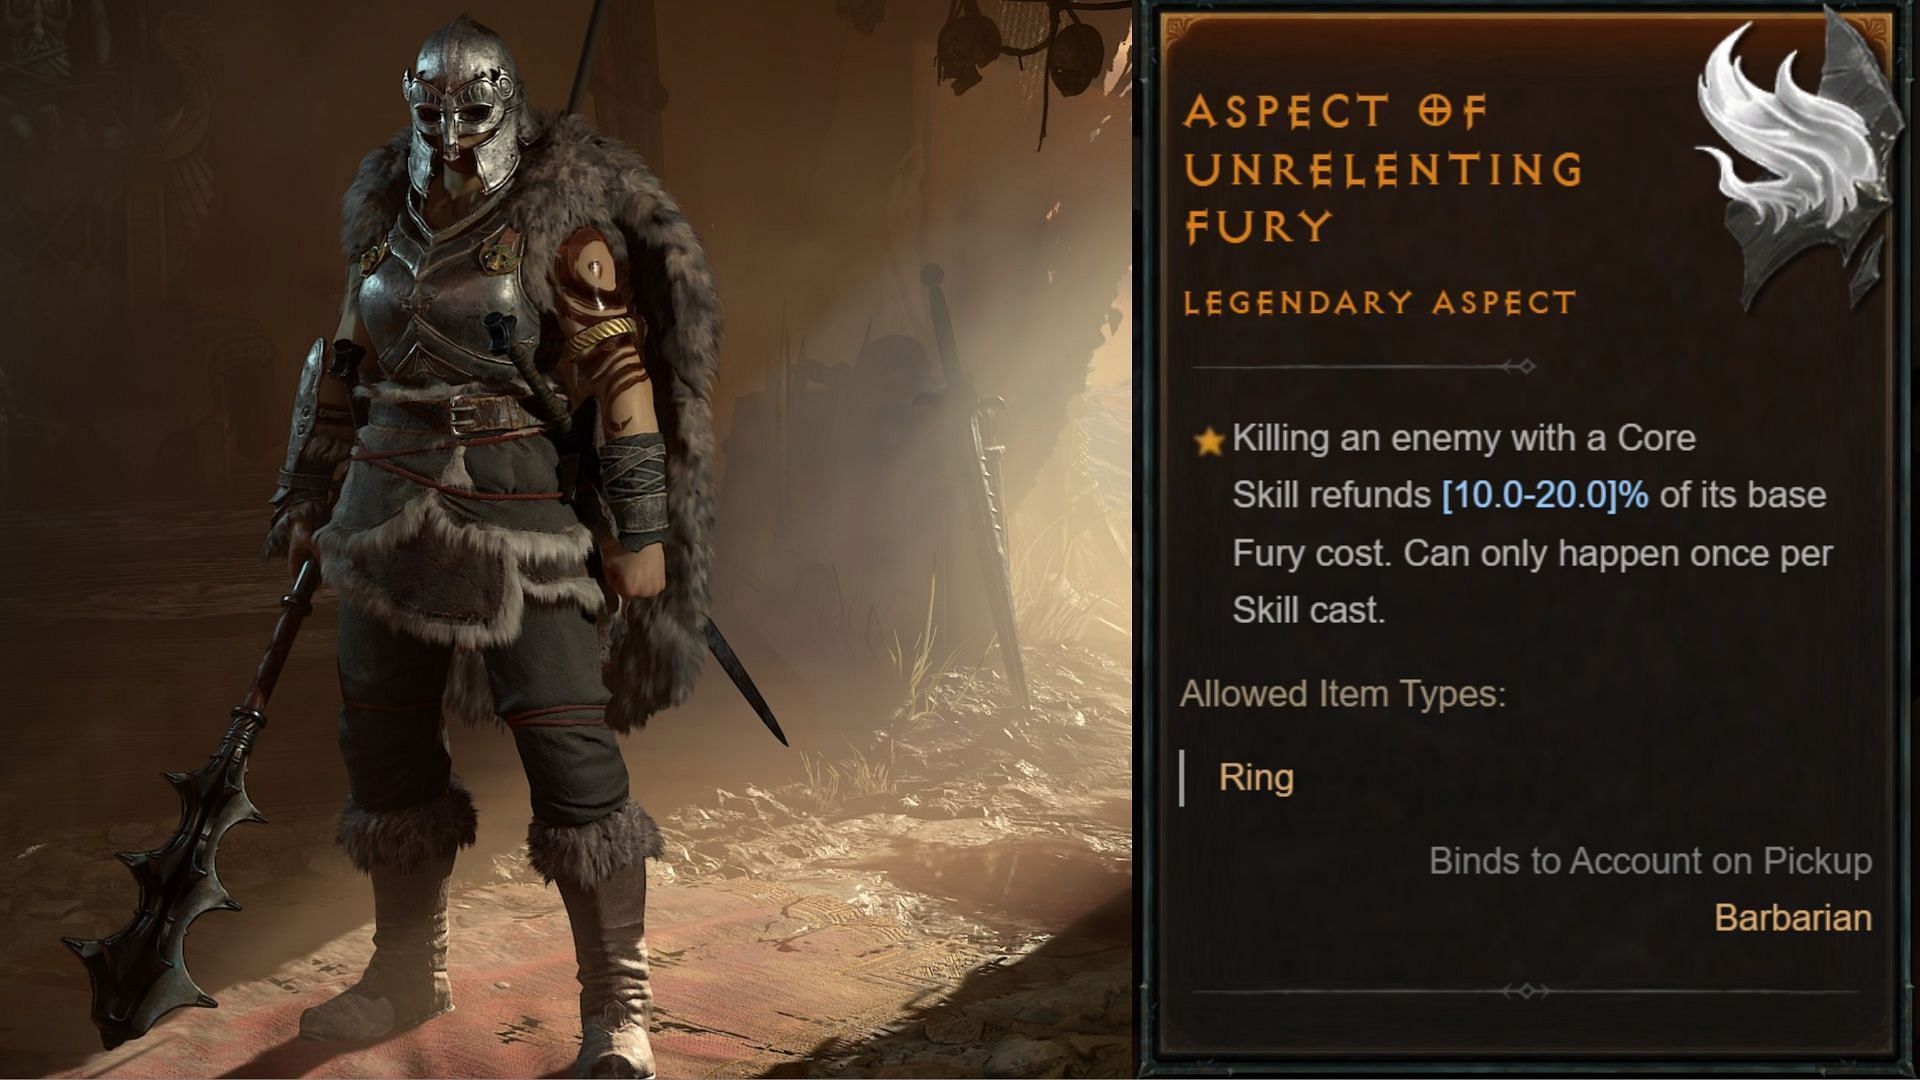 Diablo 4 Codex of Power menu with Aspect of Unrelenting Fury description.